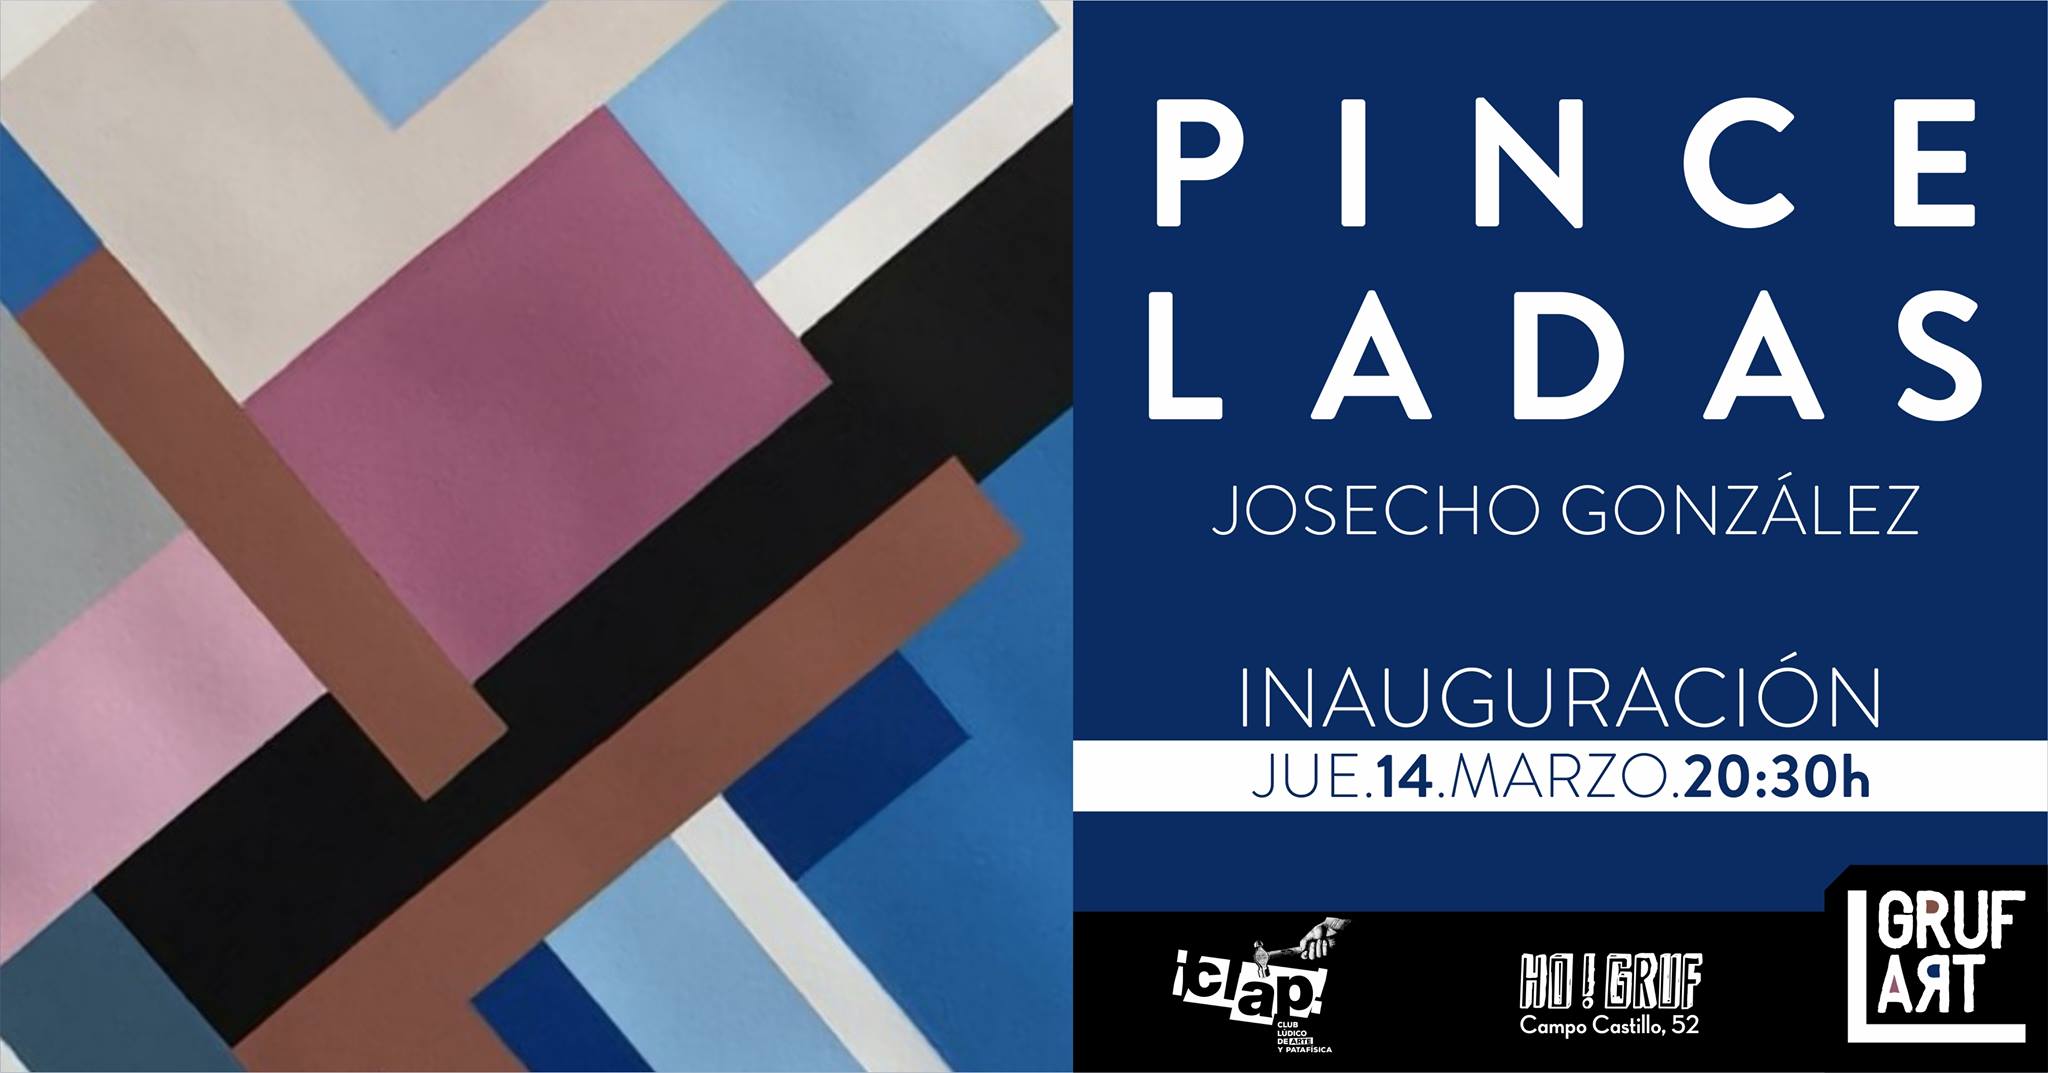 Inauguración de exposición: "Pinceladas" por Josecho González